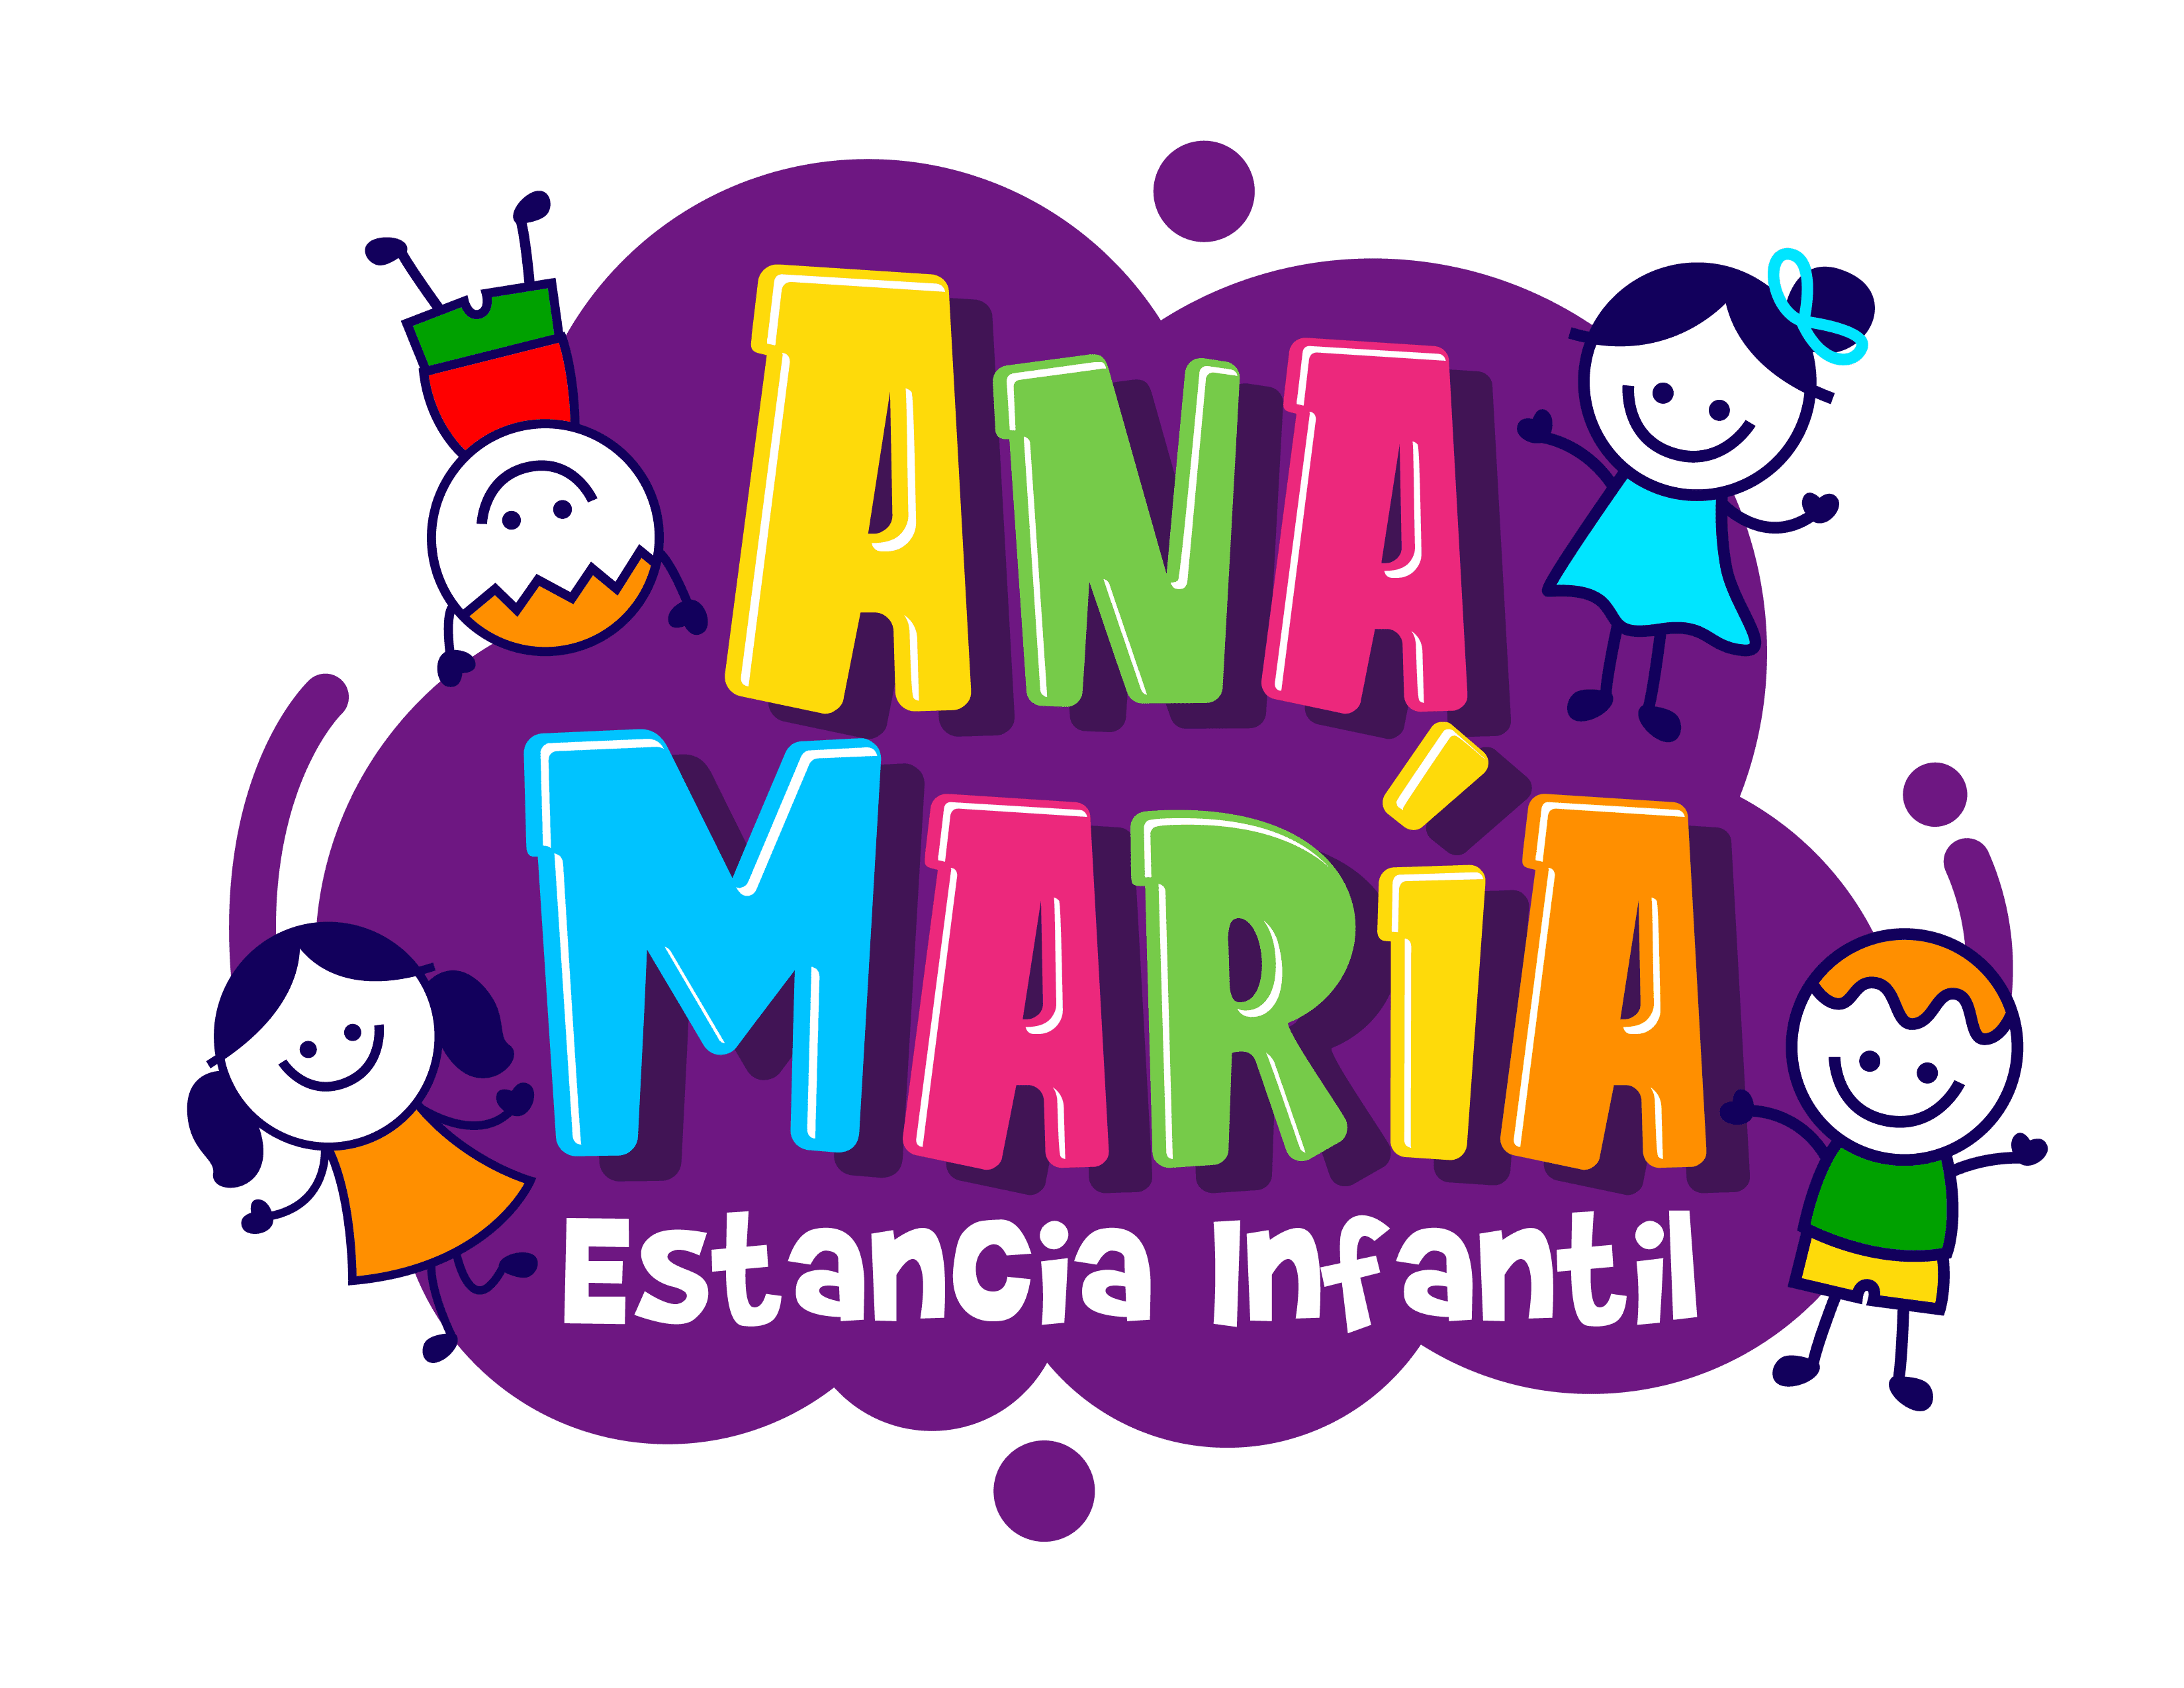 Estancia infantil Ana María